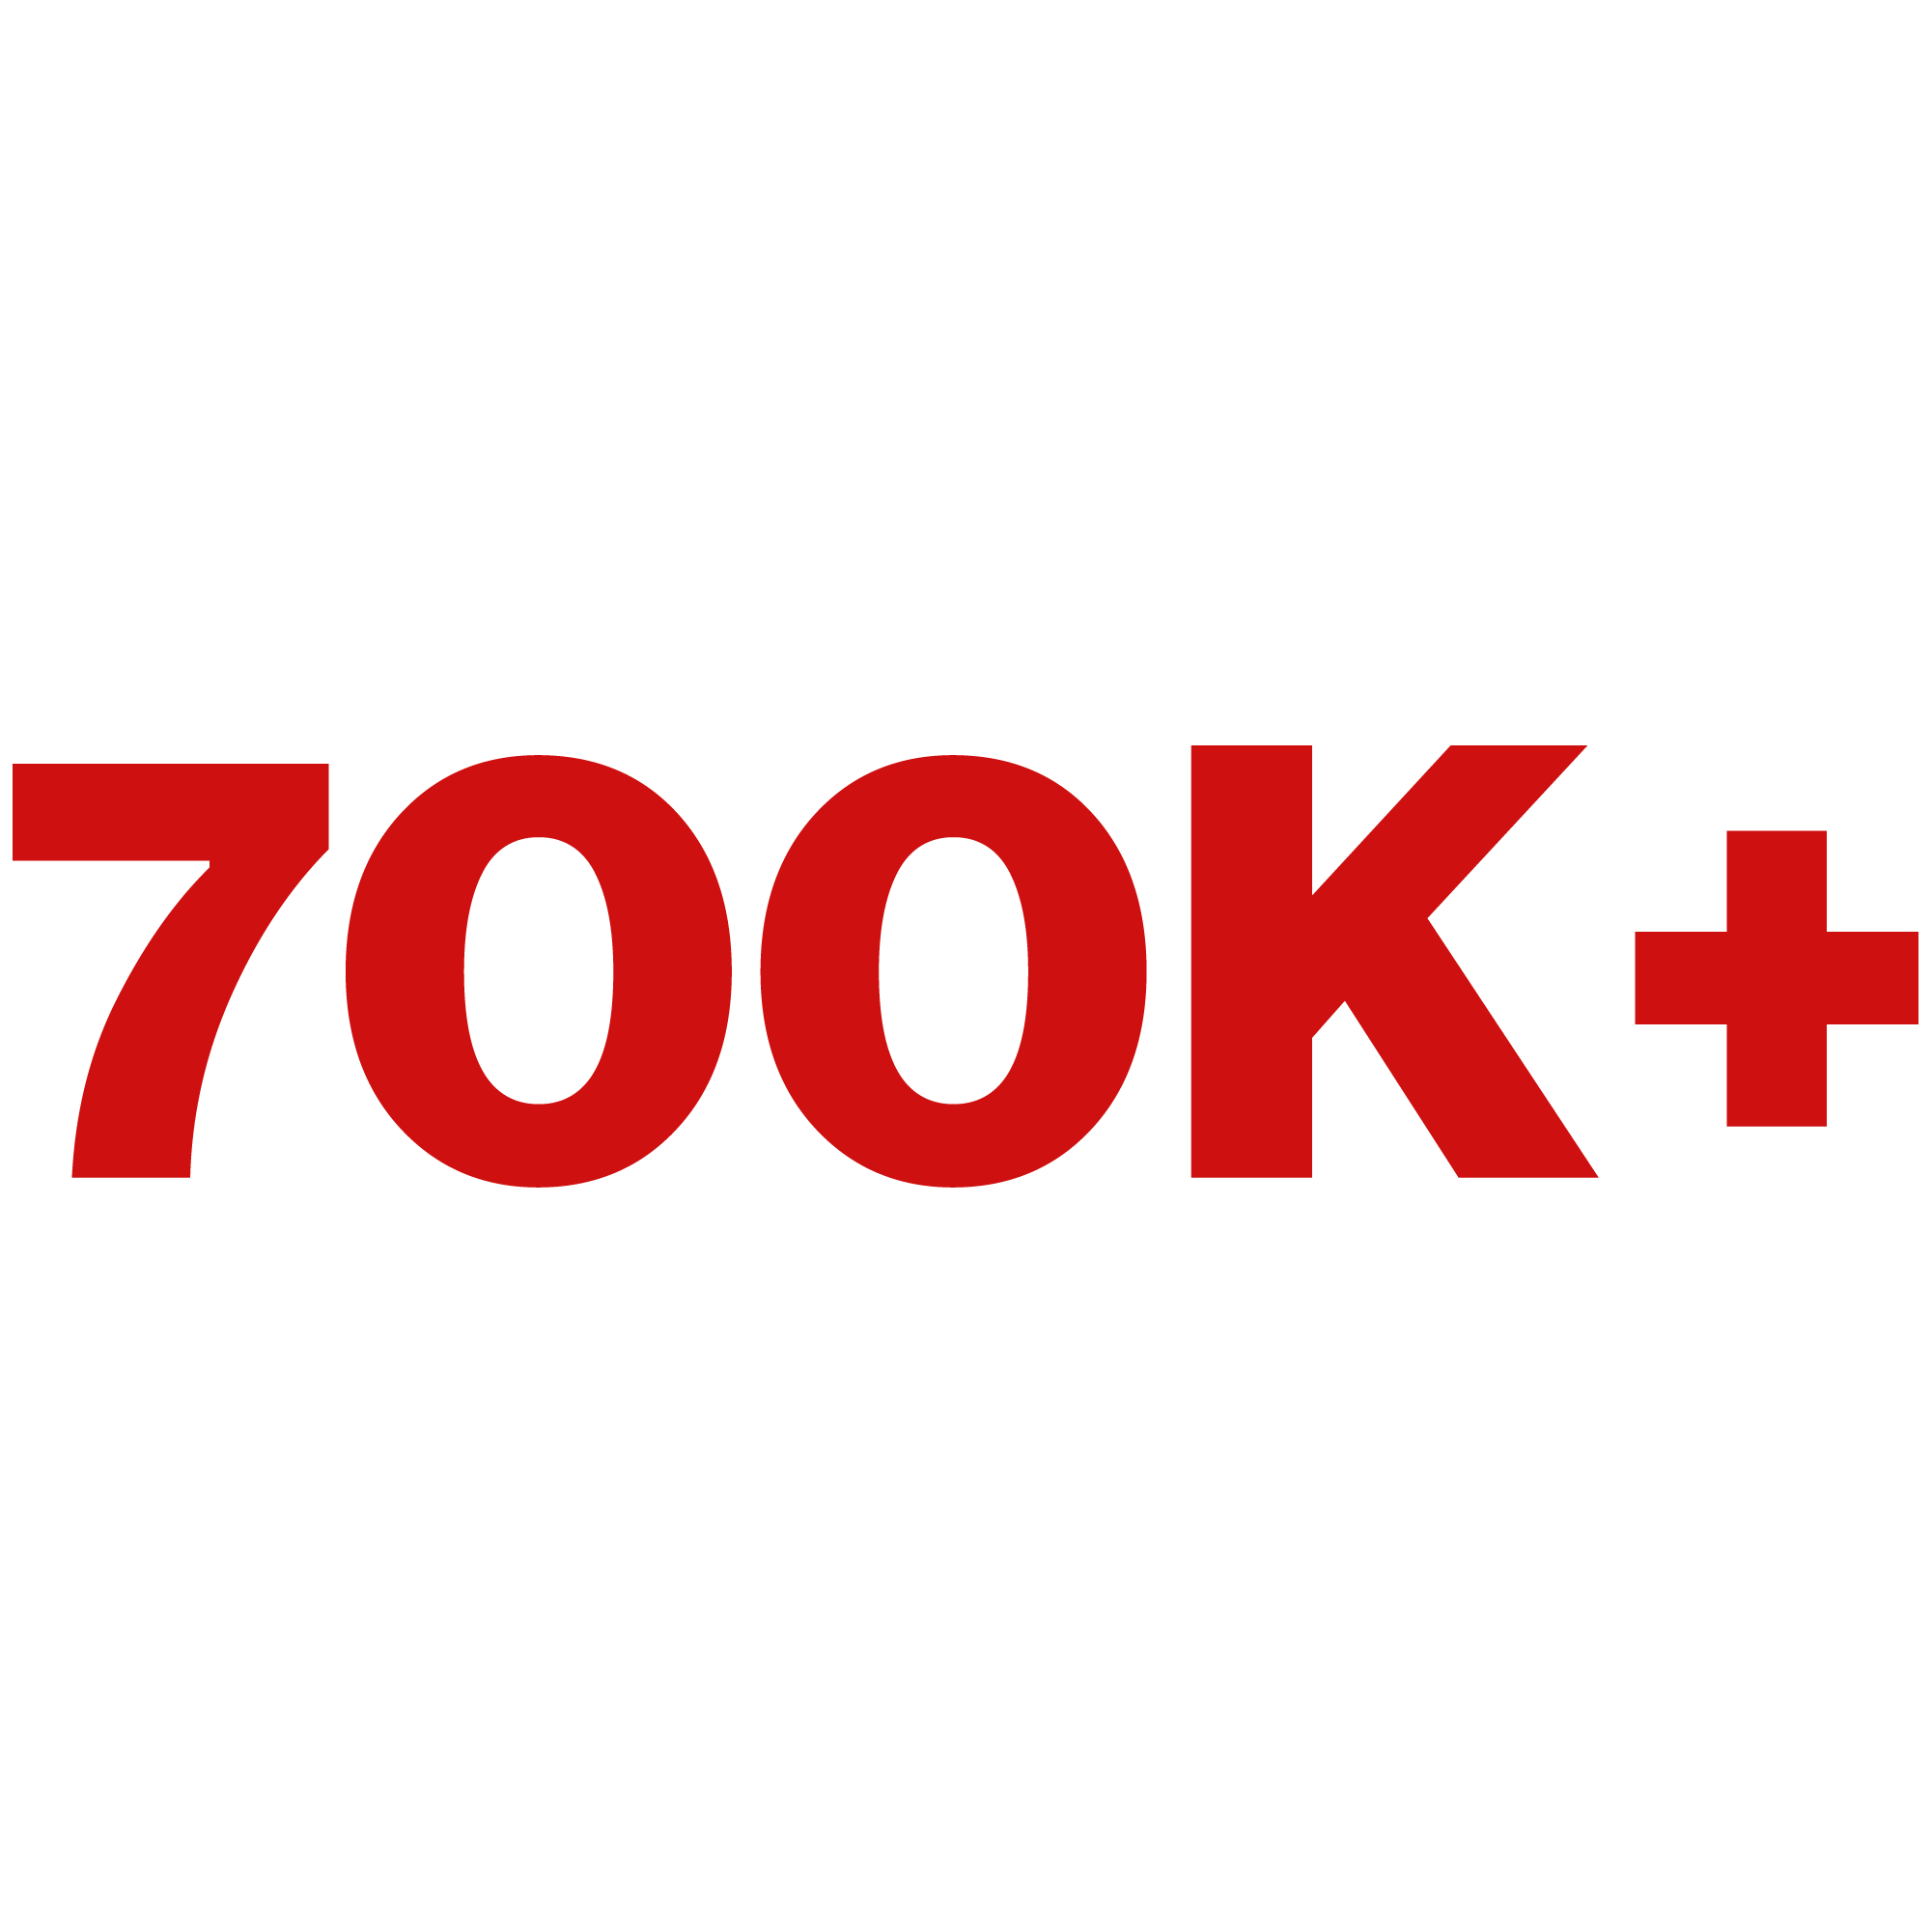 700K+